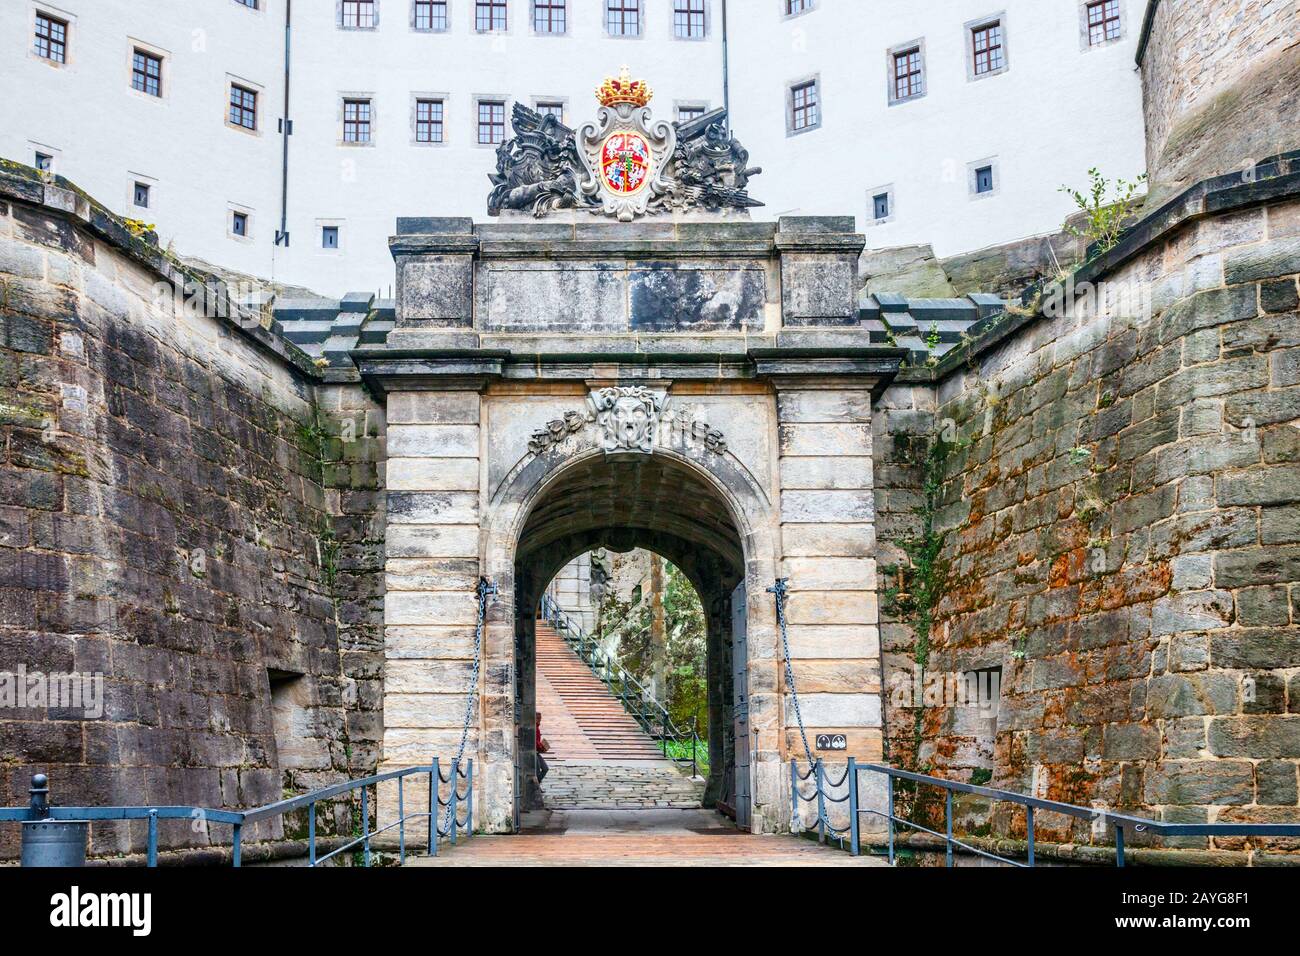 Entrada fortificada de la fortaleza de Konigstein. Konigstein, Sajonia, Alemania, Foto de stock